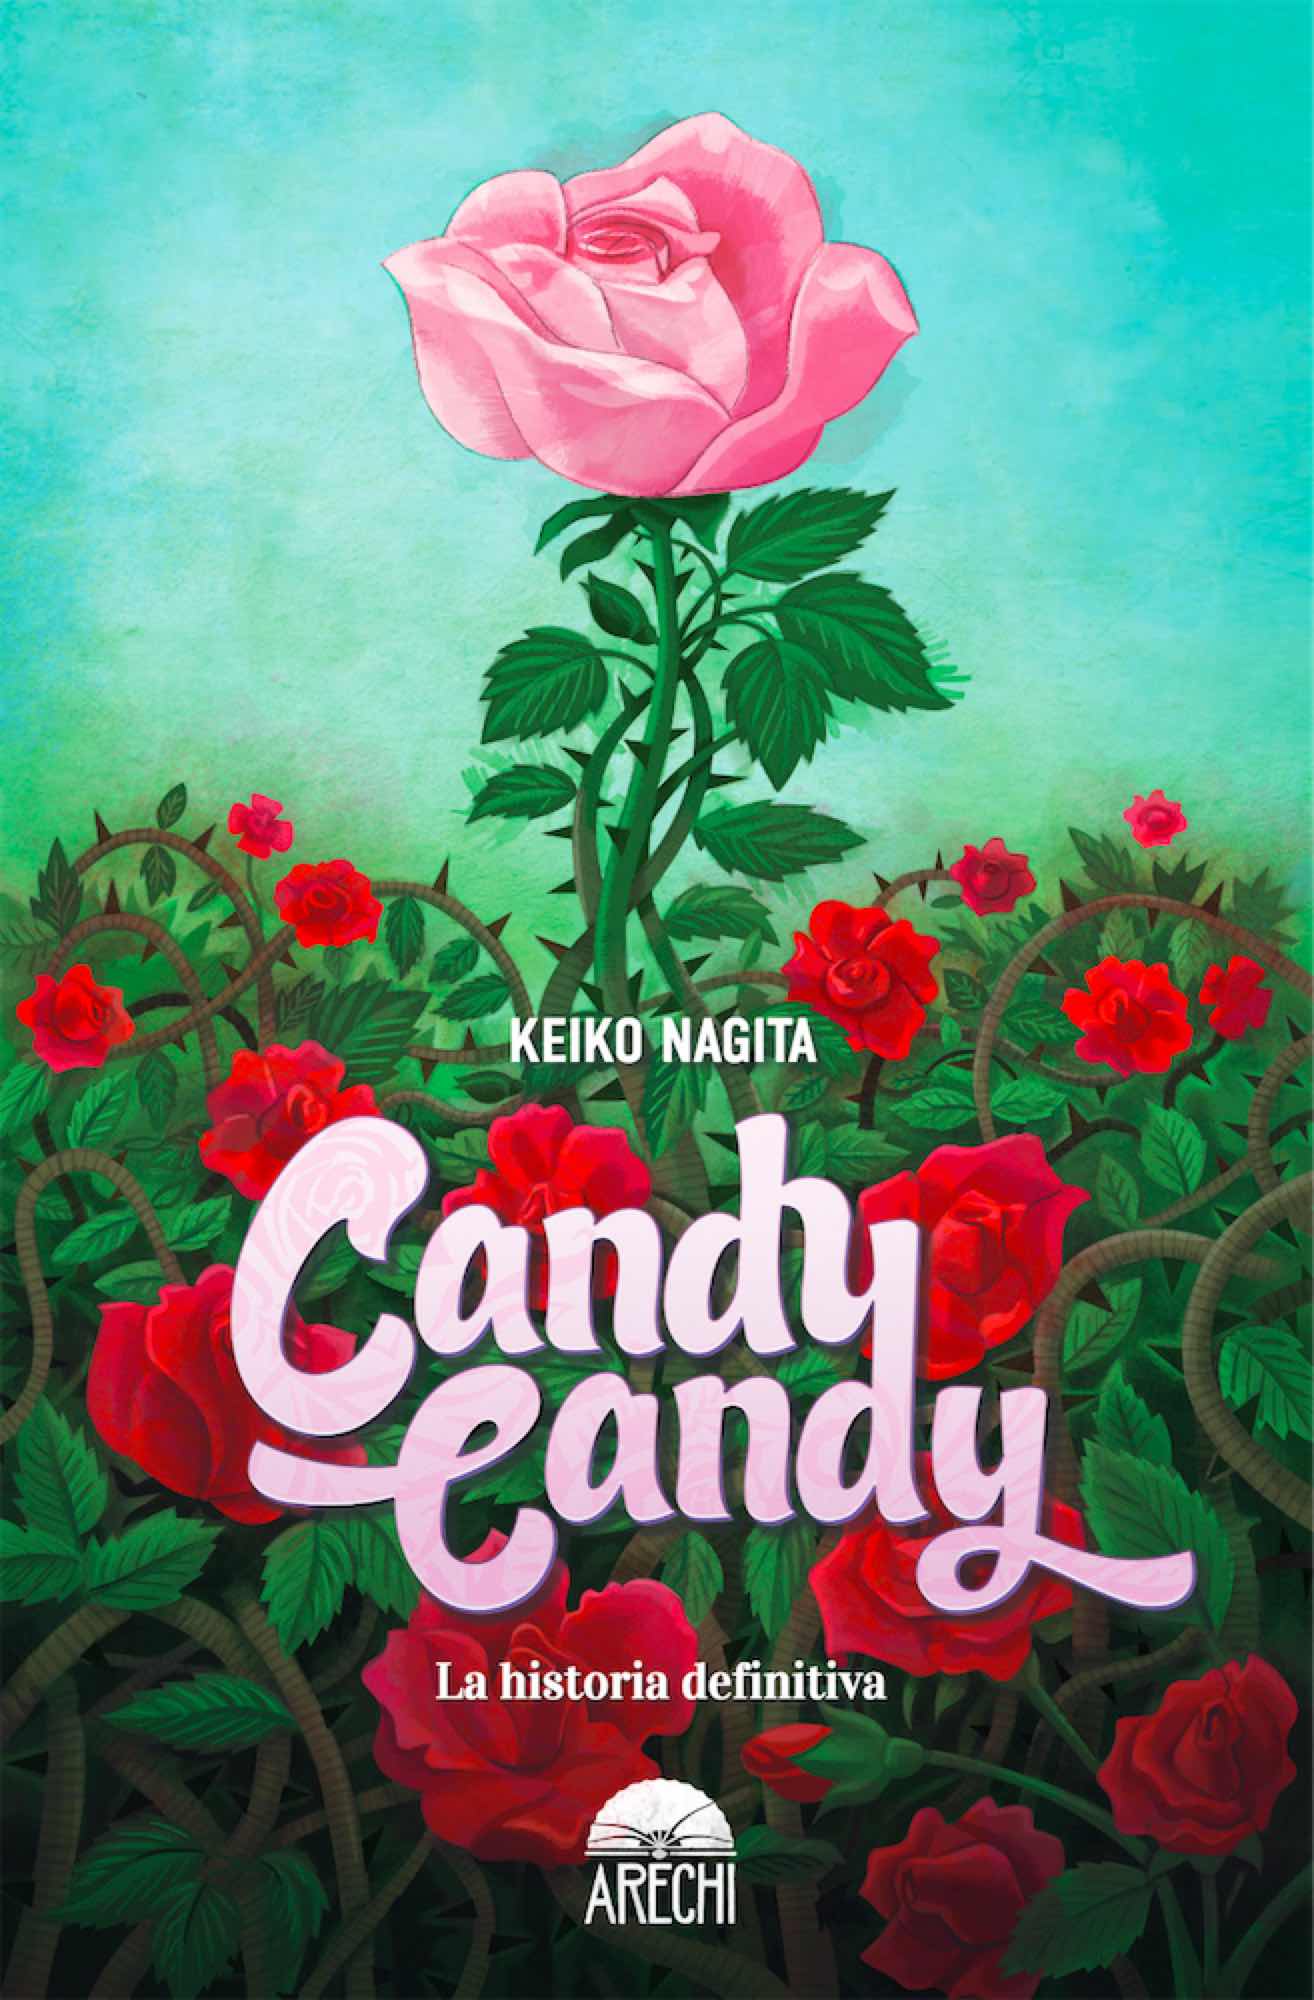 Candy: el final alternativo que nació tras el trágico desenlace original, Animes